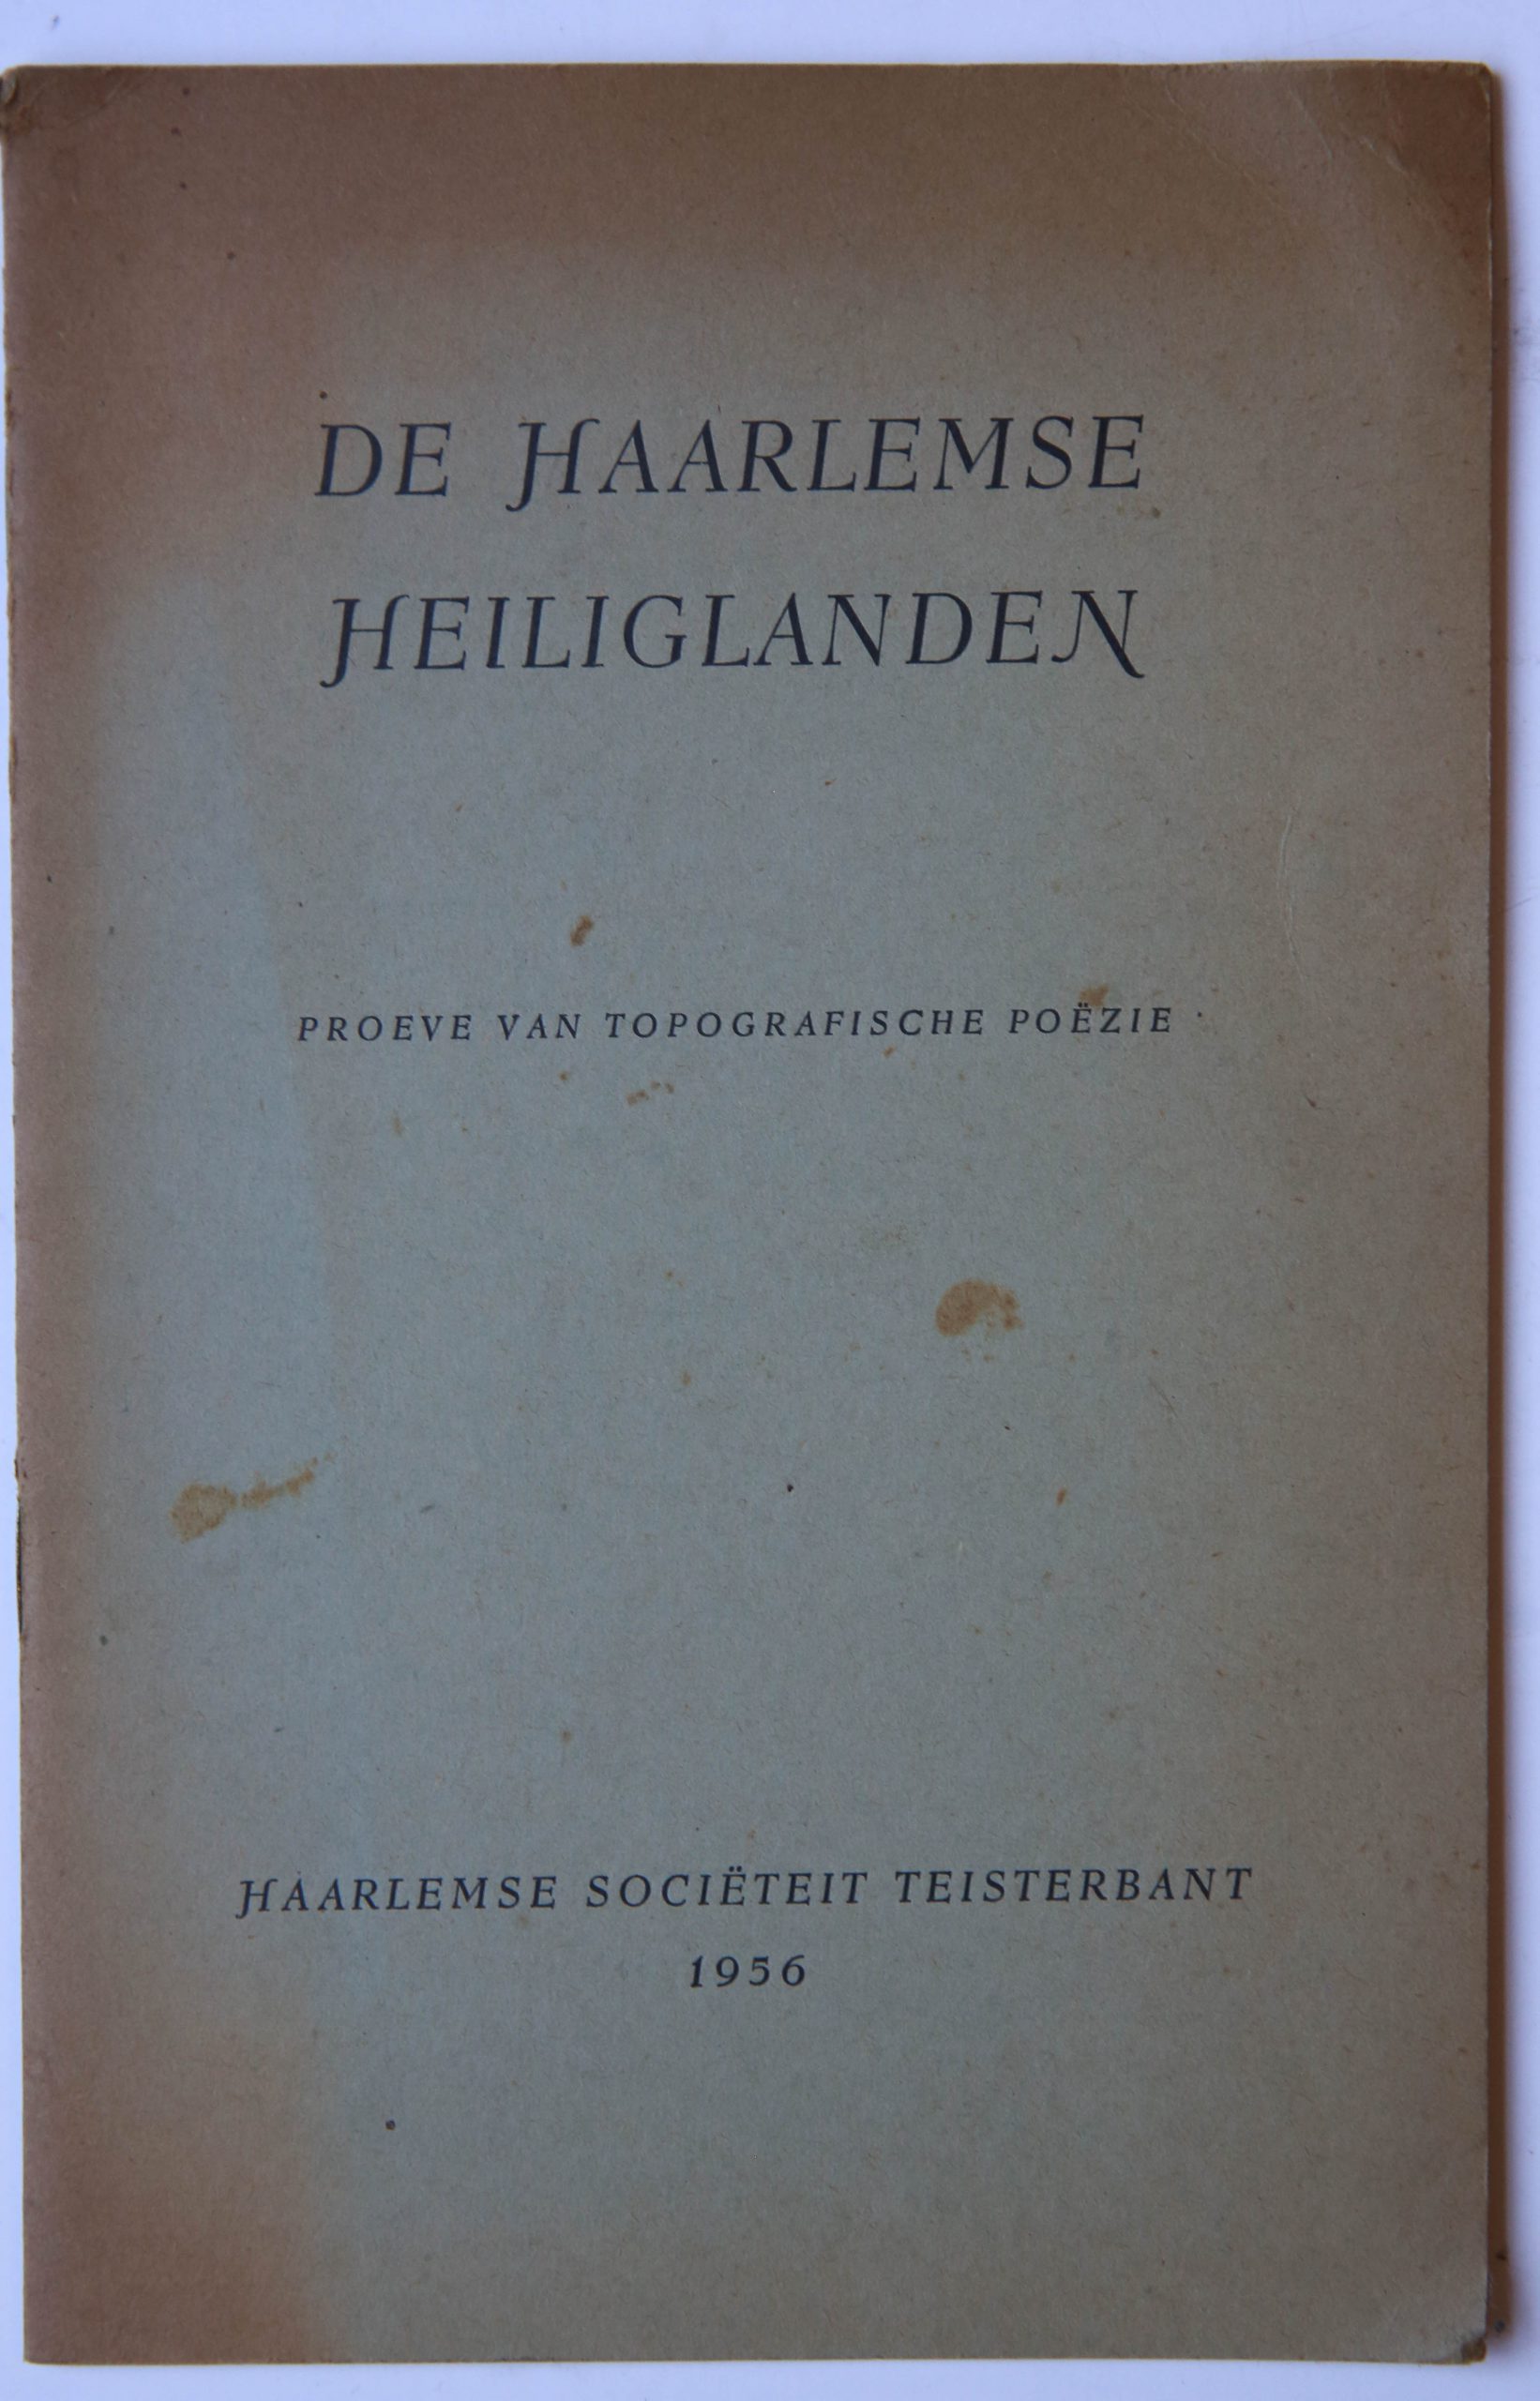 [Haarlemse societeit Teisterbant] - De Haarlemse Heiliglanden, proeve van topografische poezie, Haarlemse Societeit Teisterbant 1956, 16 pp.